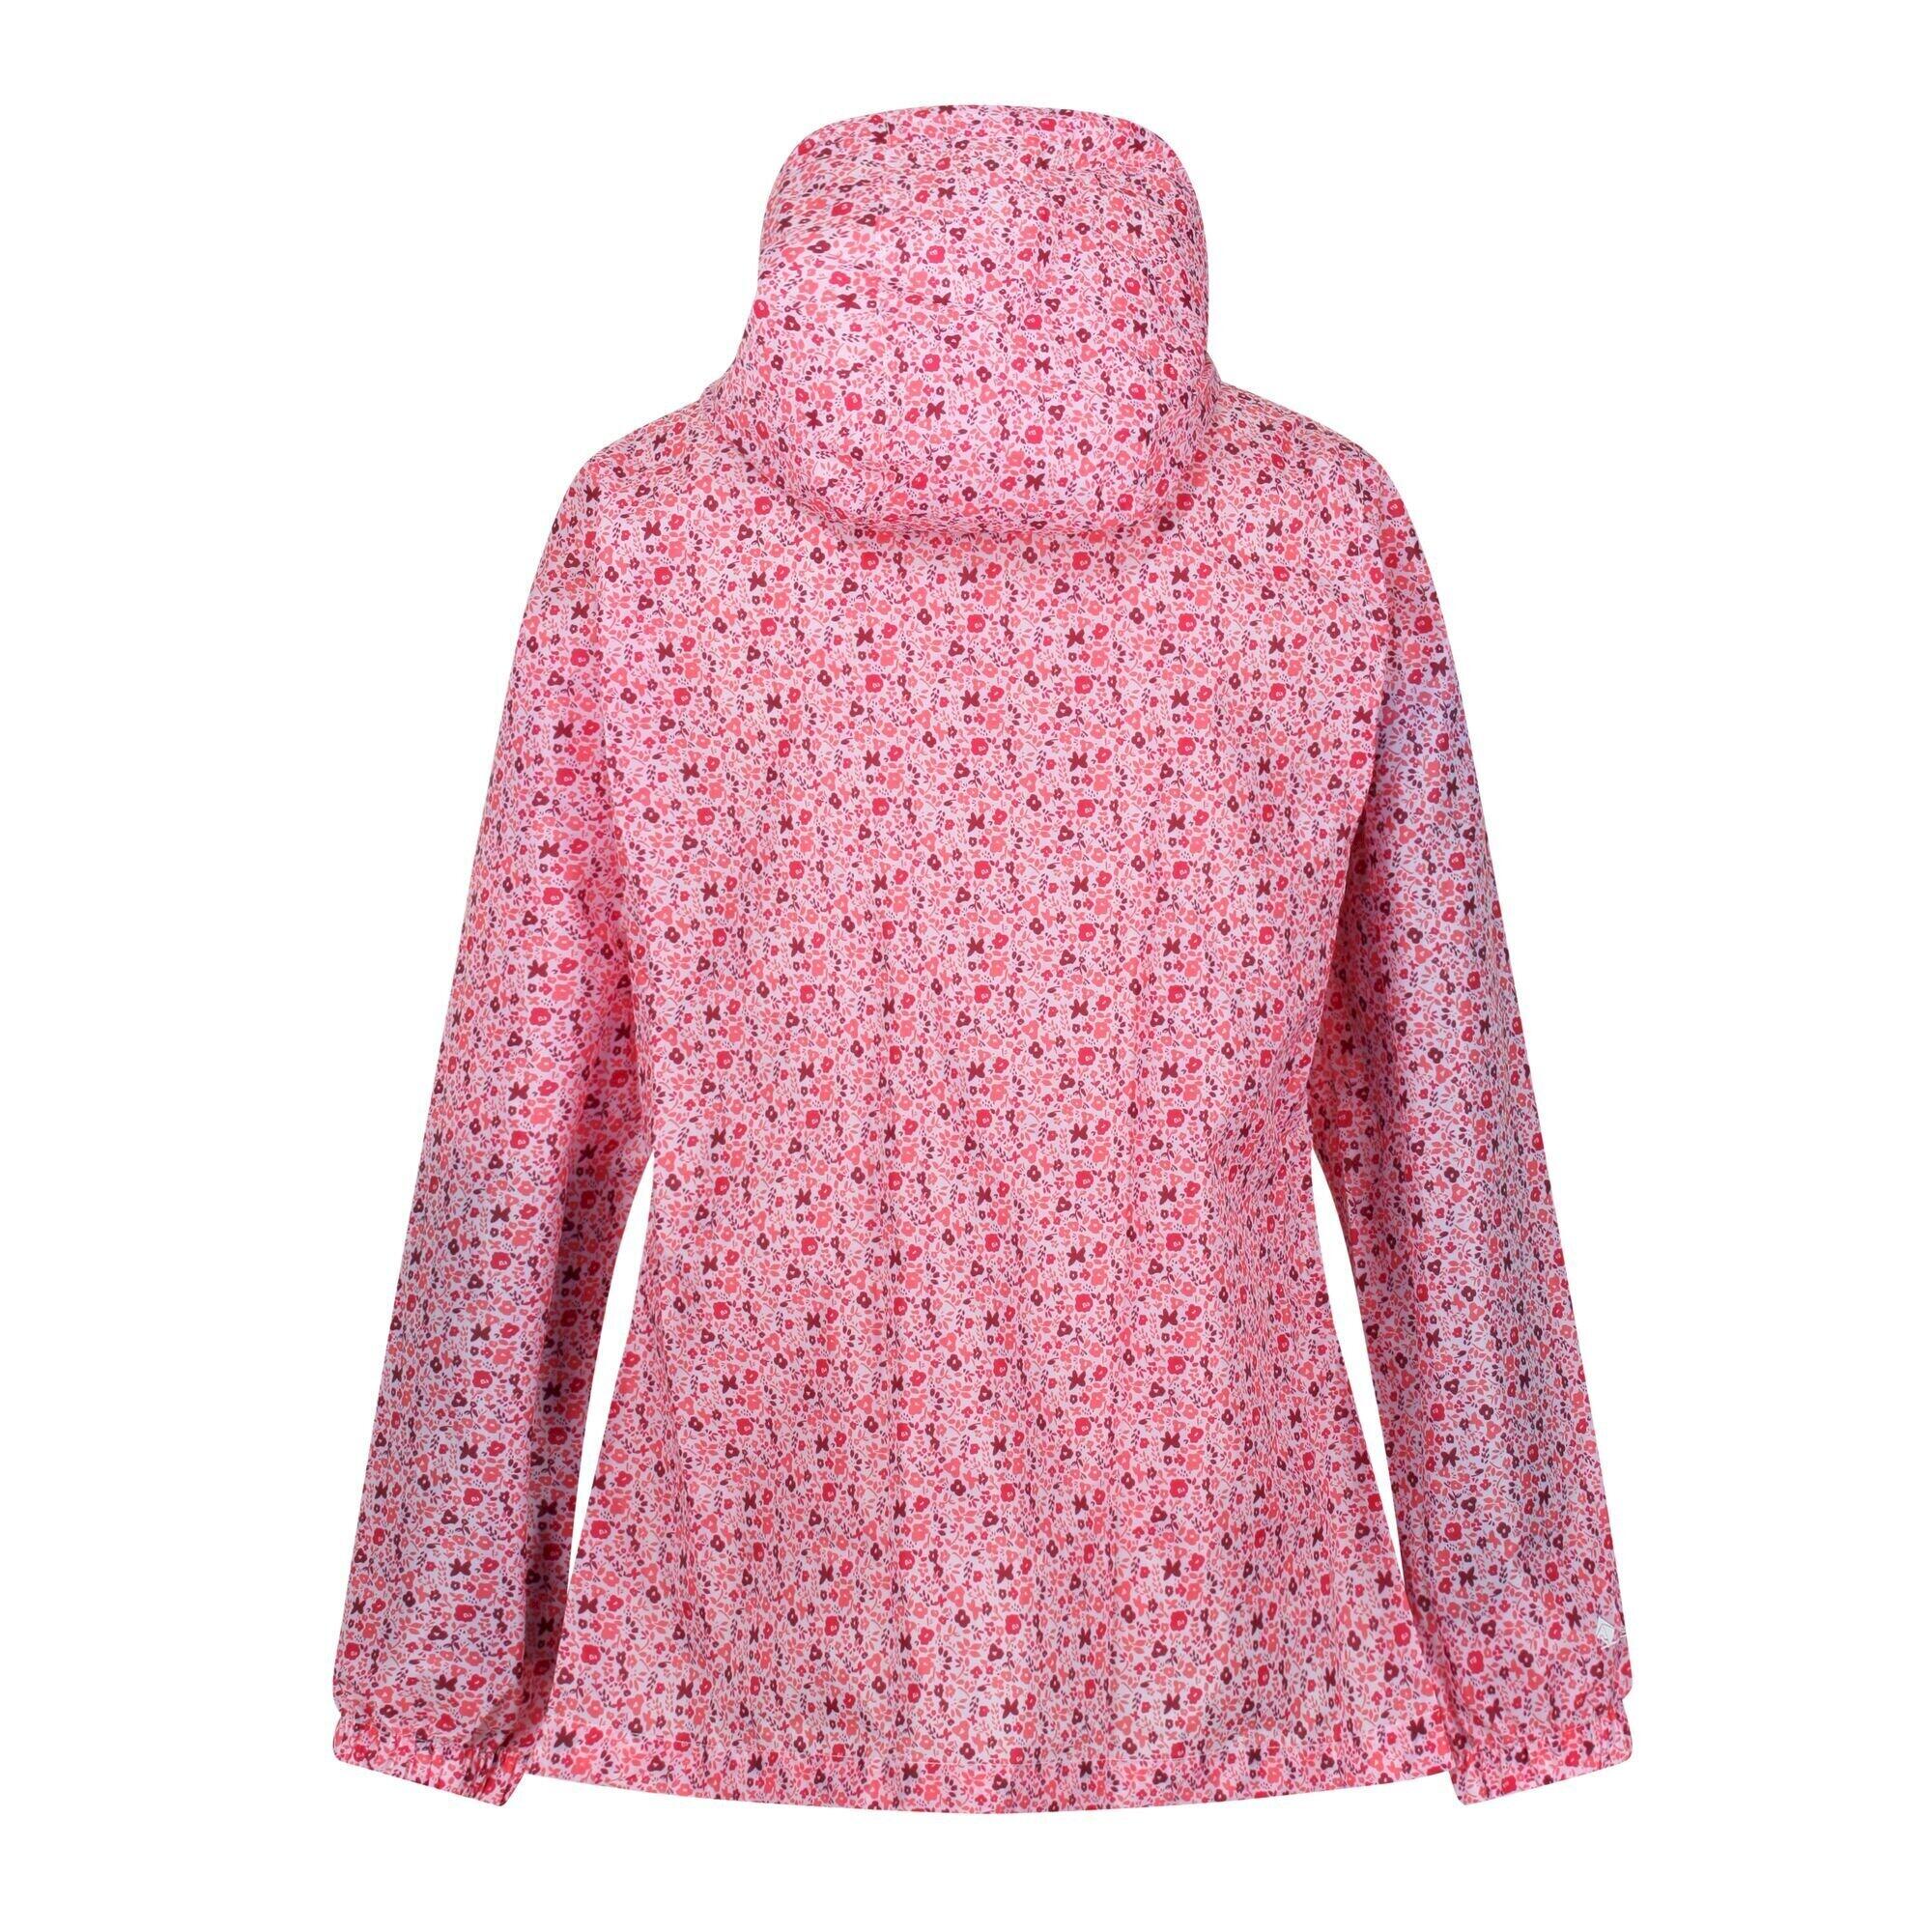 Womens/Ladies Pack It Ditsy Print Waterproof Jacket (Tropical Pink) 2/5